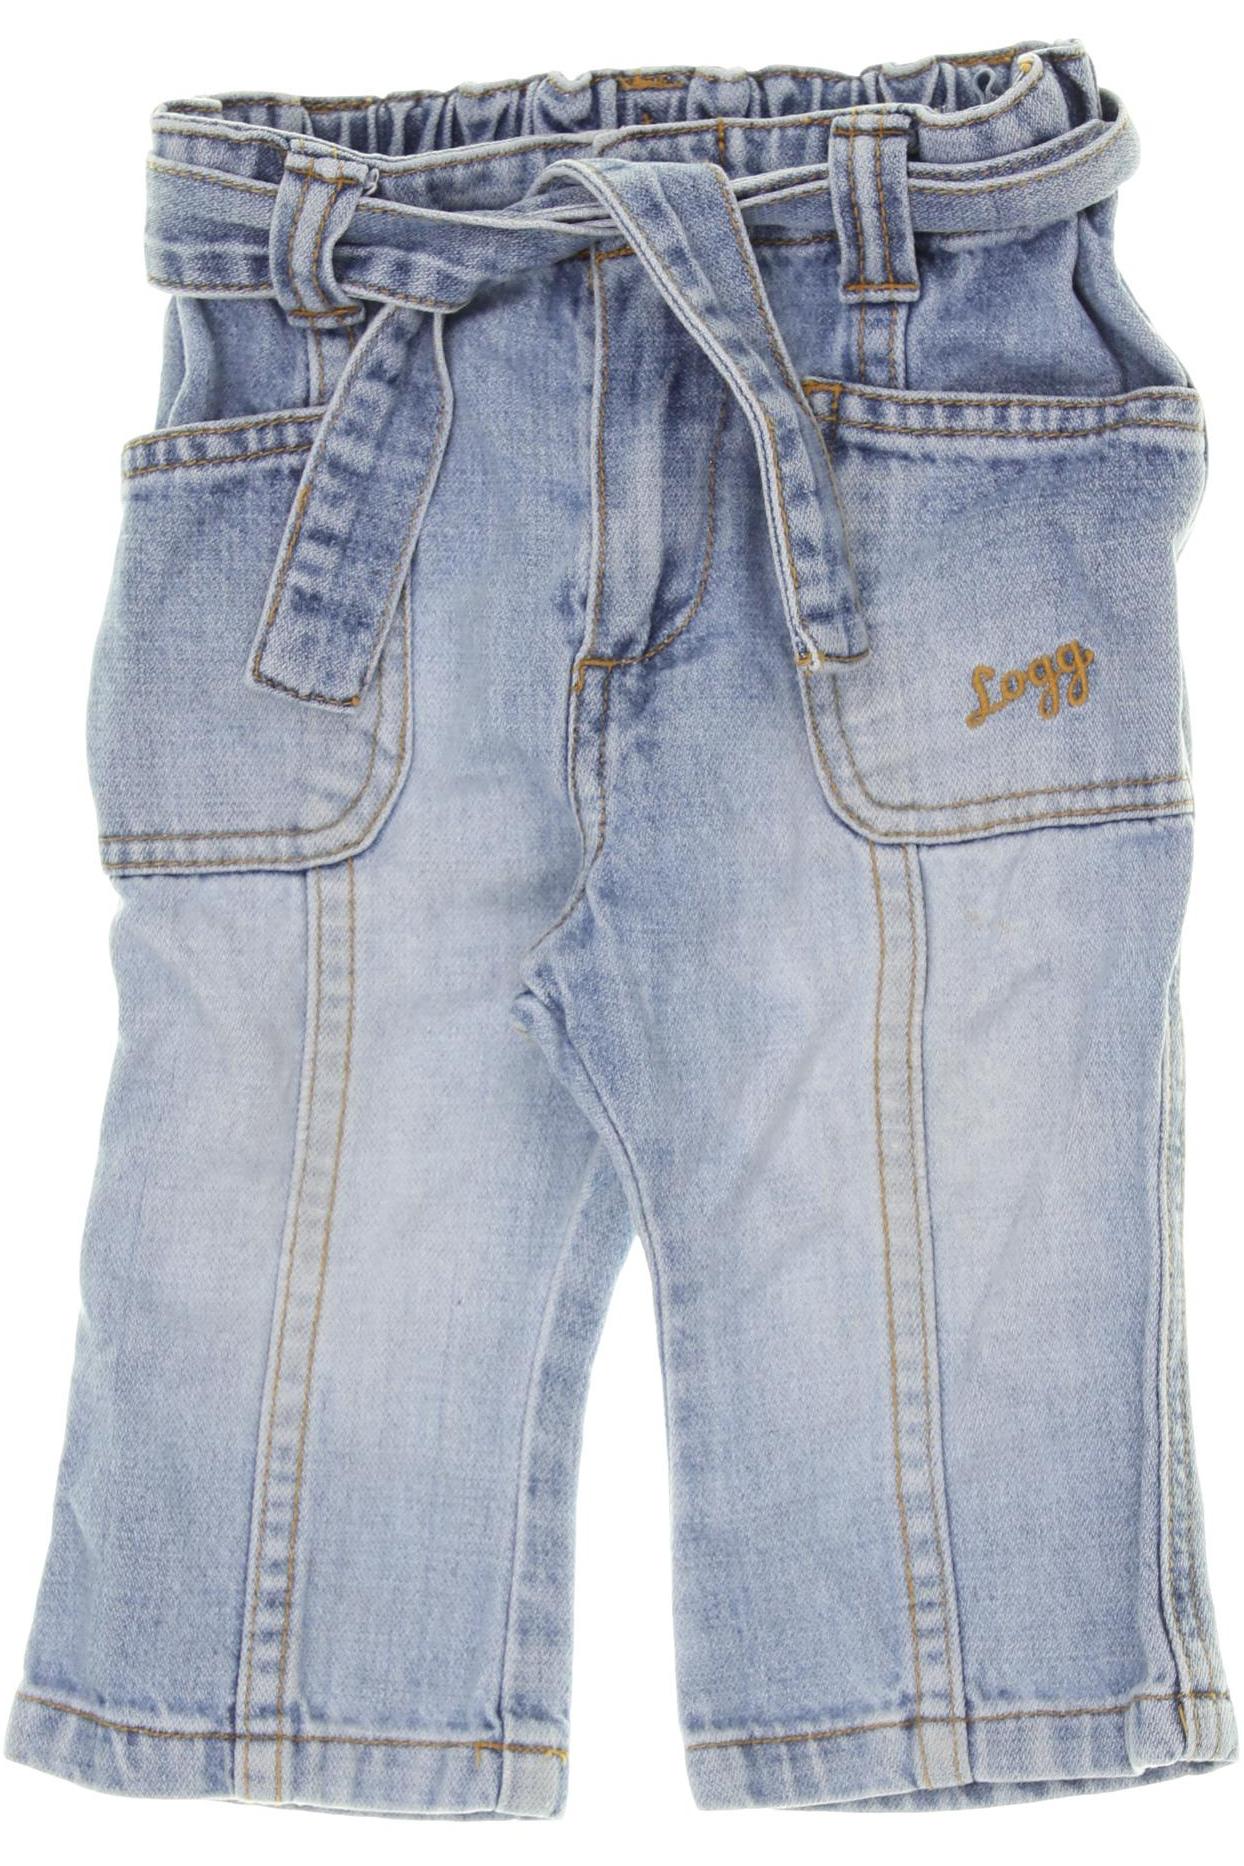 H&M Herren Jeans, blau, Gr. 74 von H&M